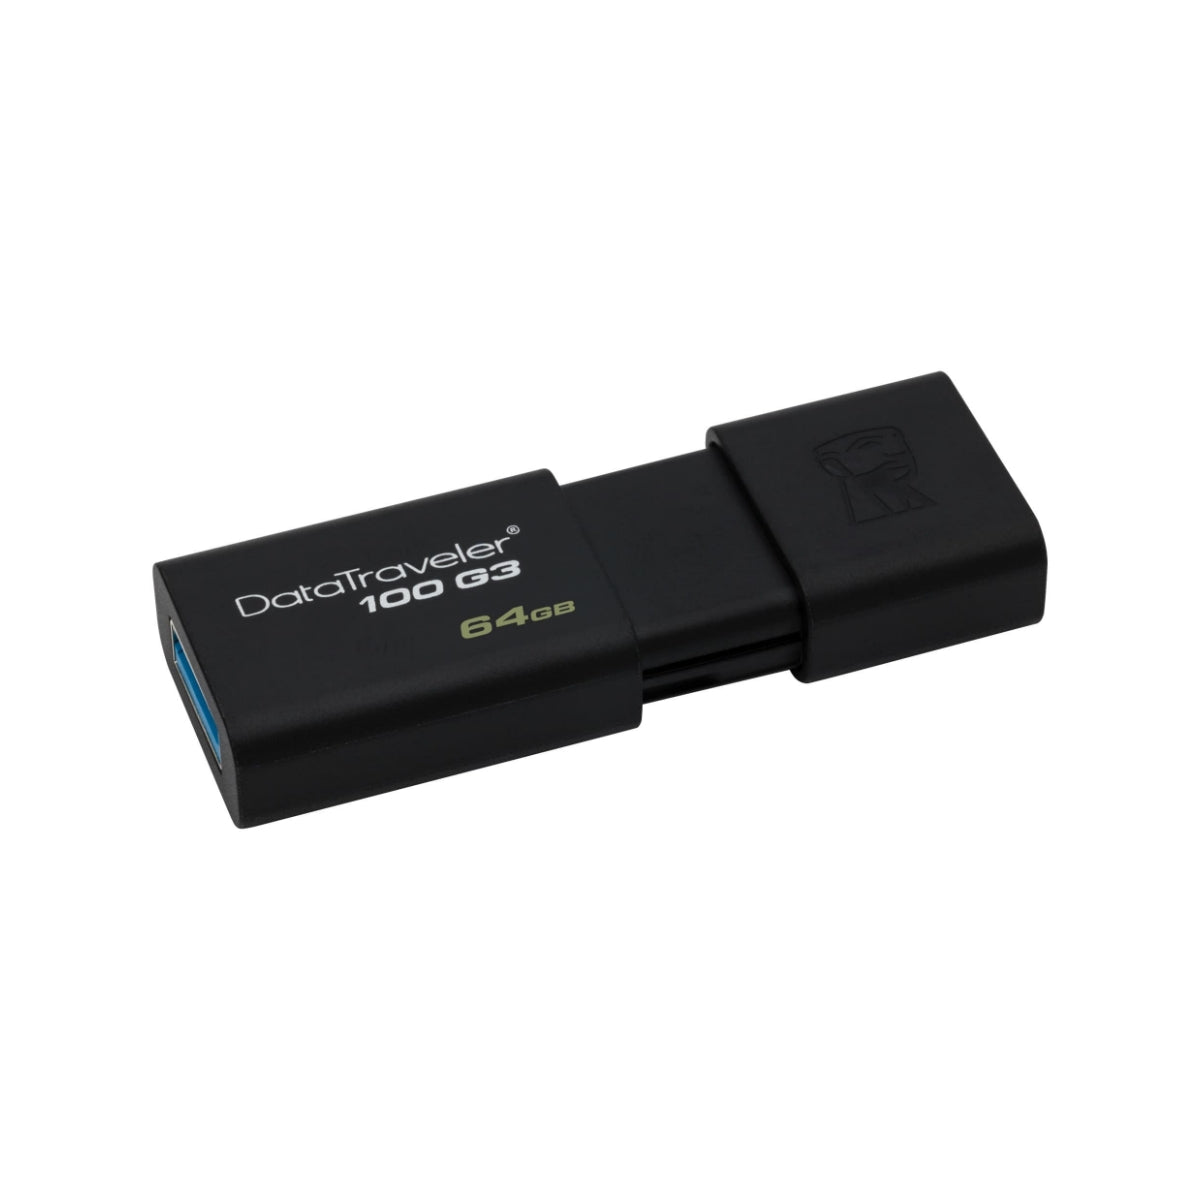 Kingston Digital 16GB 100 G3 USB 3.0 DataTraveler (Seminuevo)